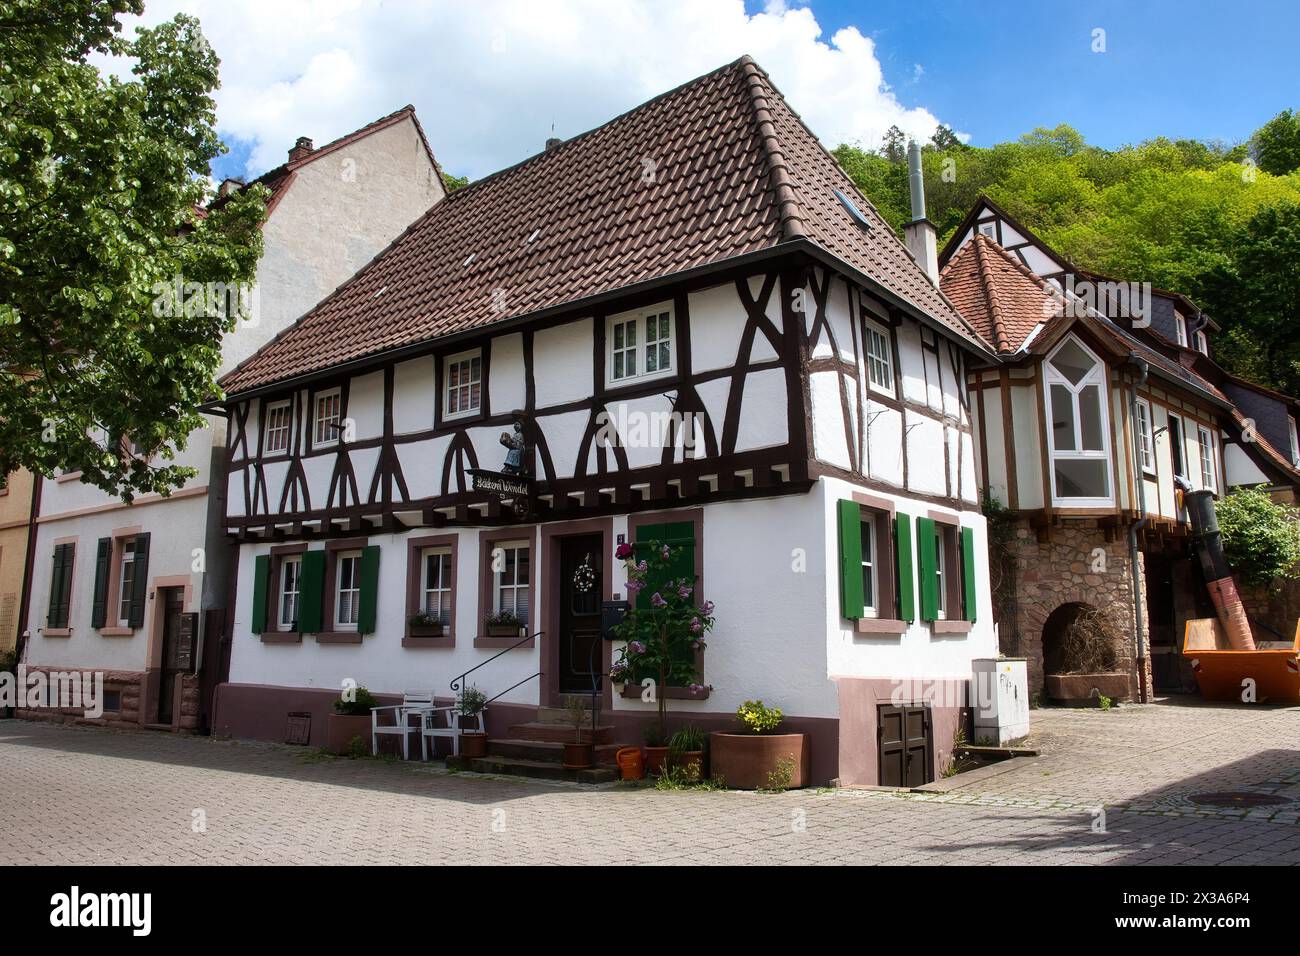 Weinheim, Allemagne - 19 mai 2021 : boulangerie dans un bâtiment à colombages sur une rue pavée un jour de printemps à Weinheim, Allemagne. Banque D'Images